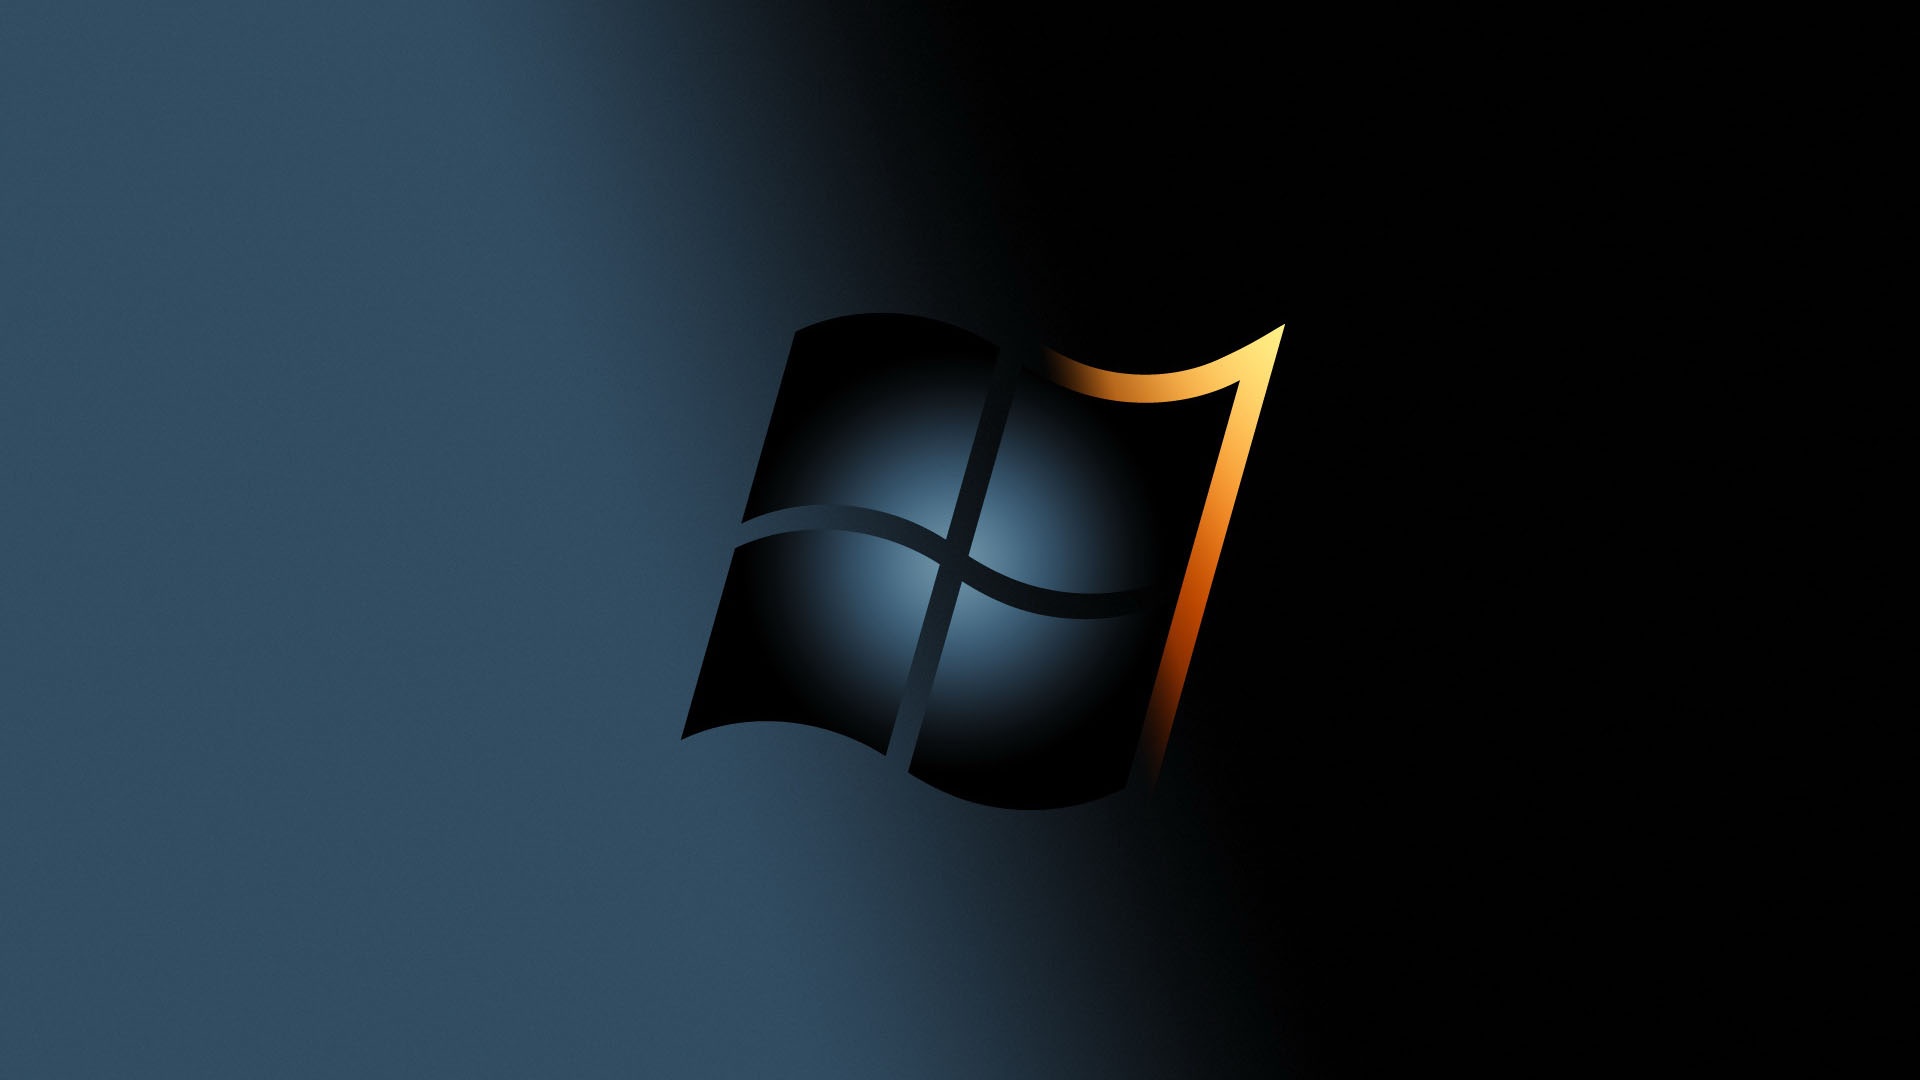 HD Wallpapers for Windows 7 | PixelsTalk Net